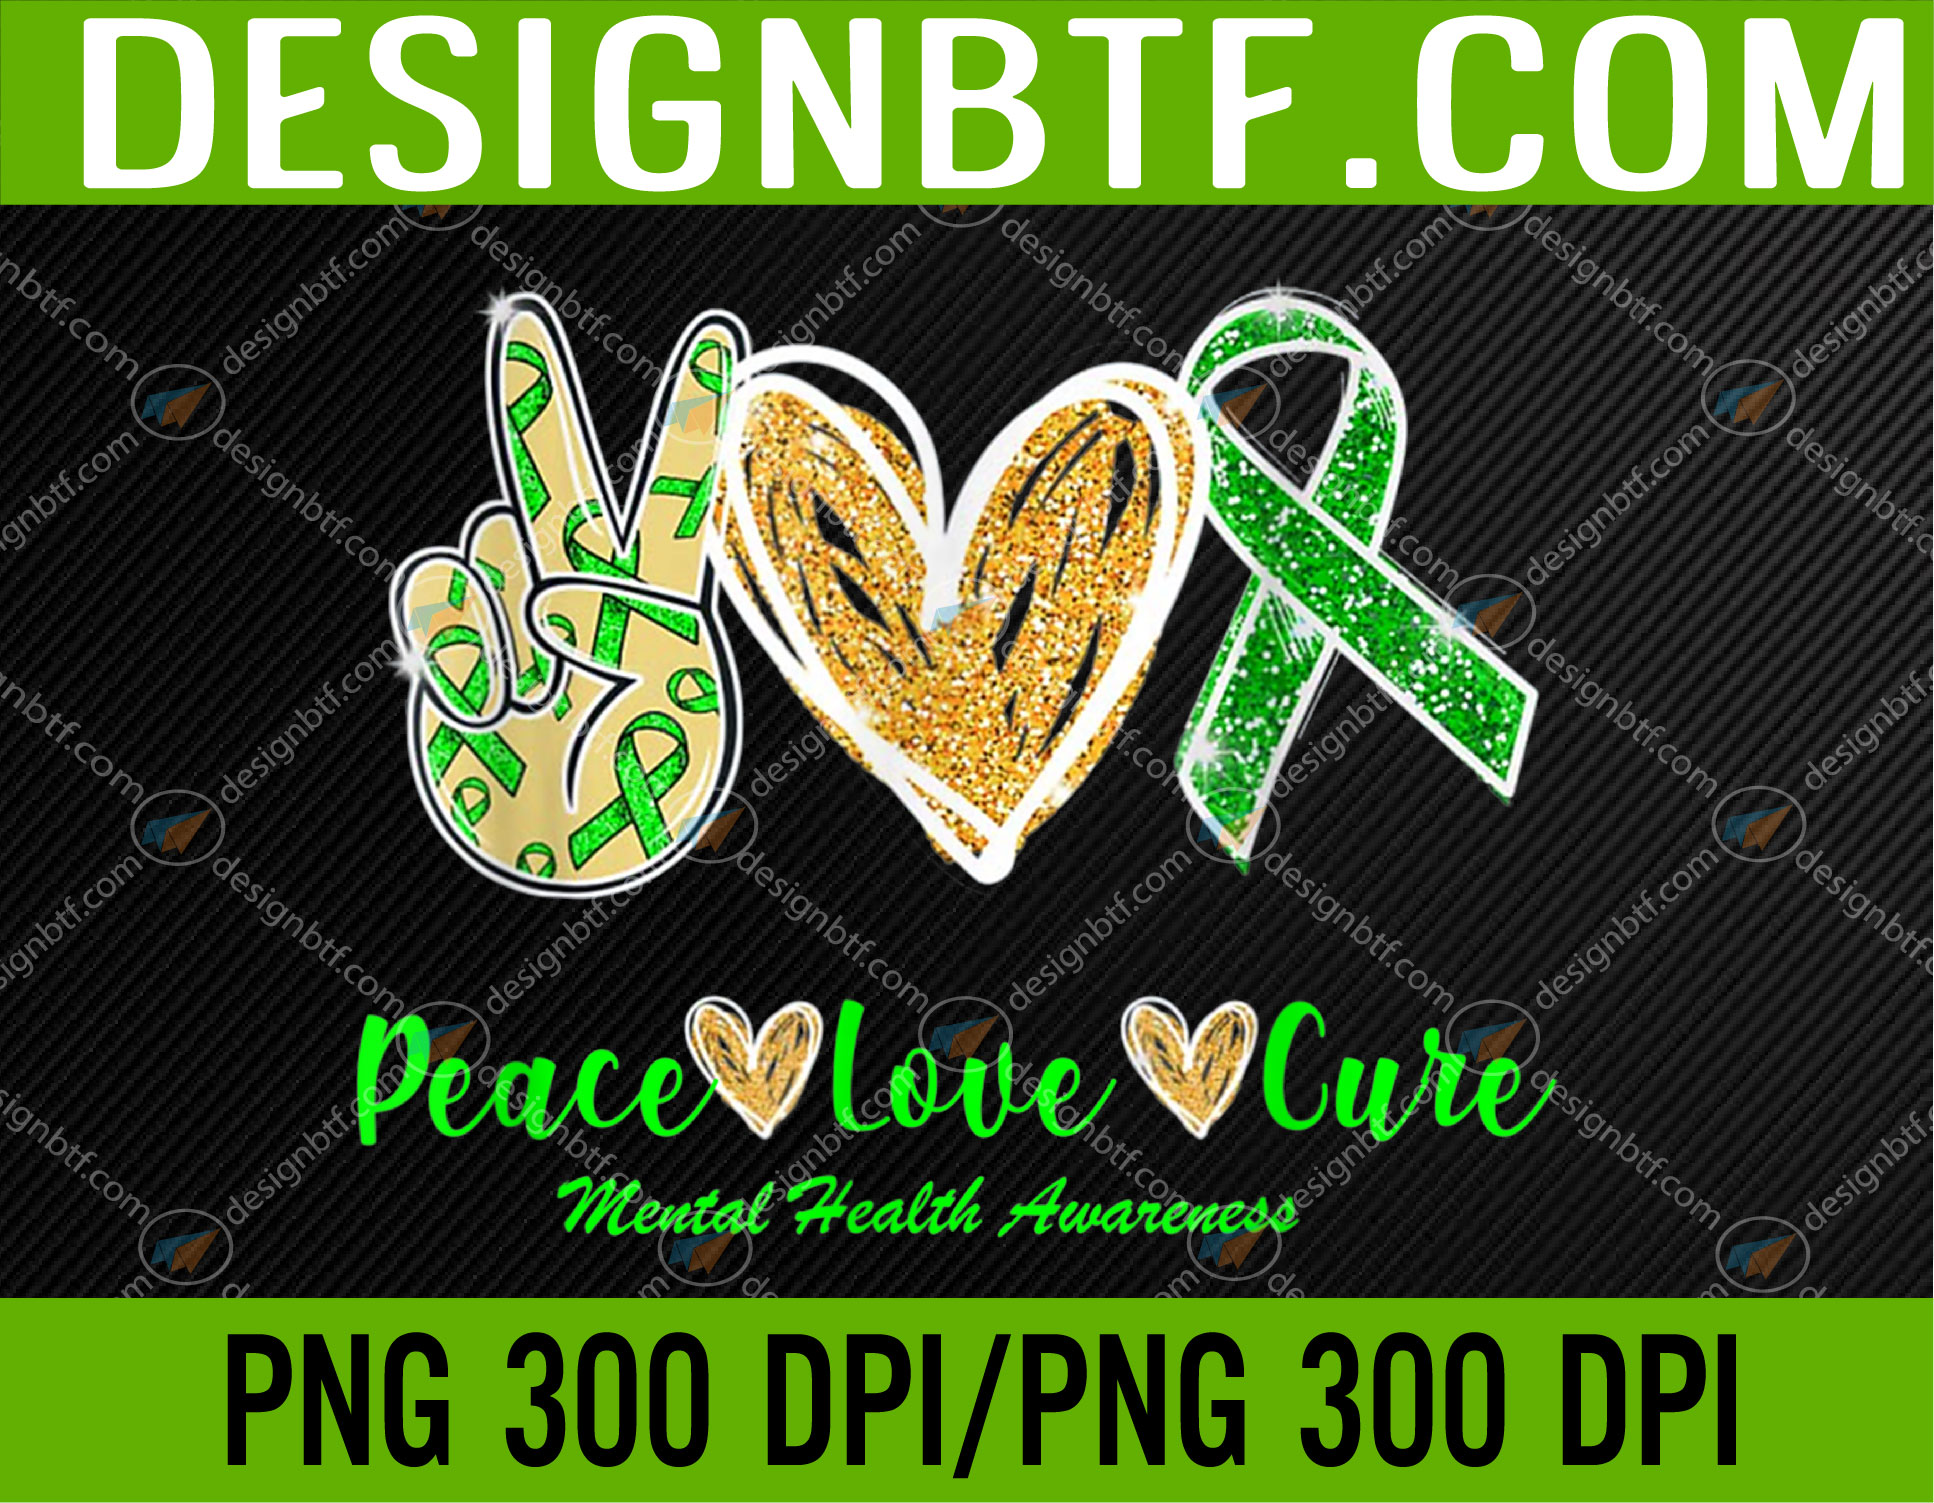 Peace Love Hope Mental Health Awareness PNG Digital Download ...